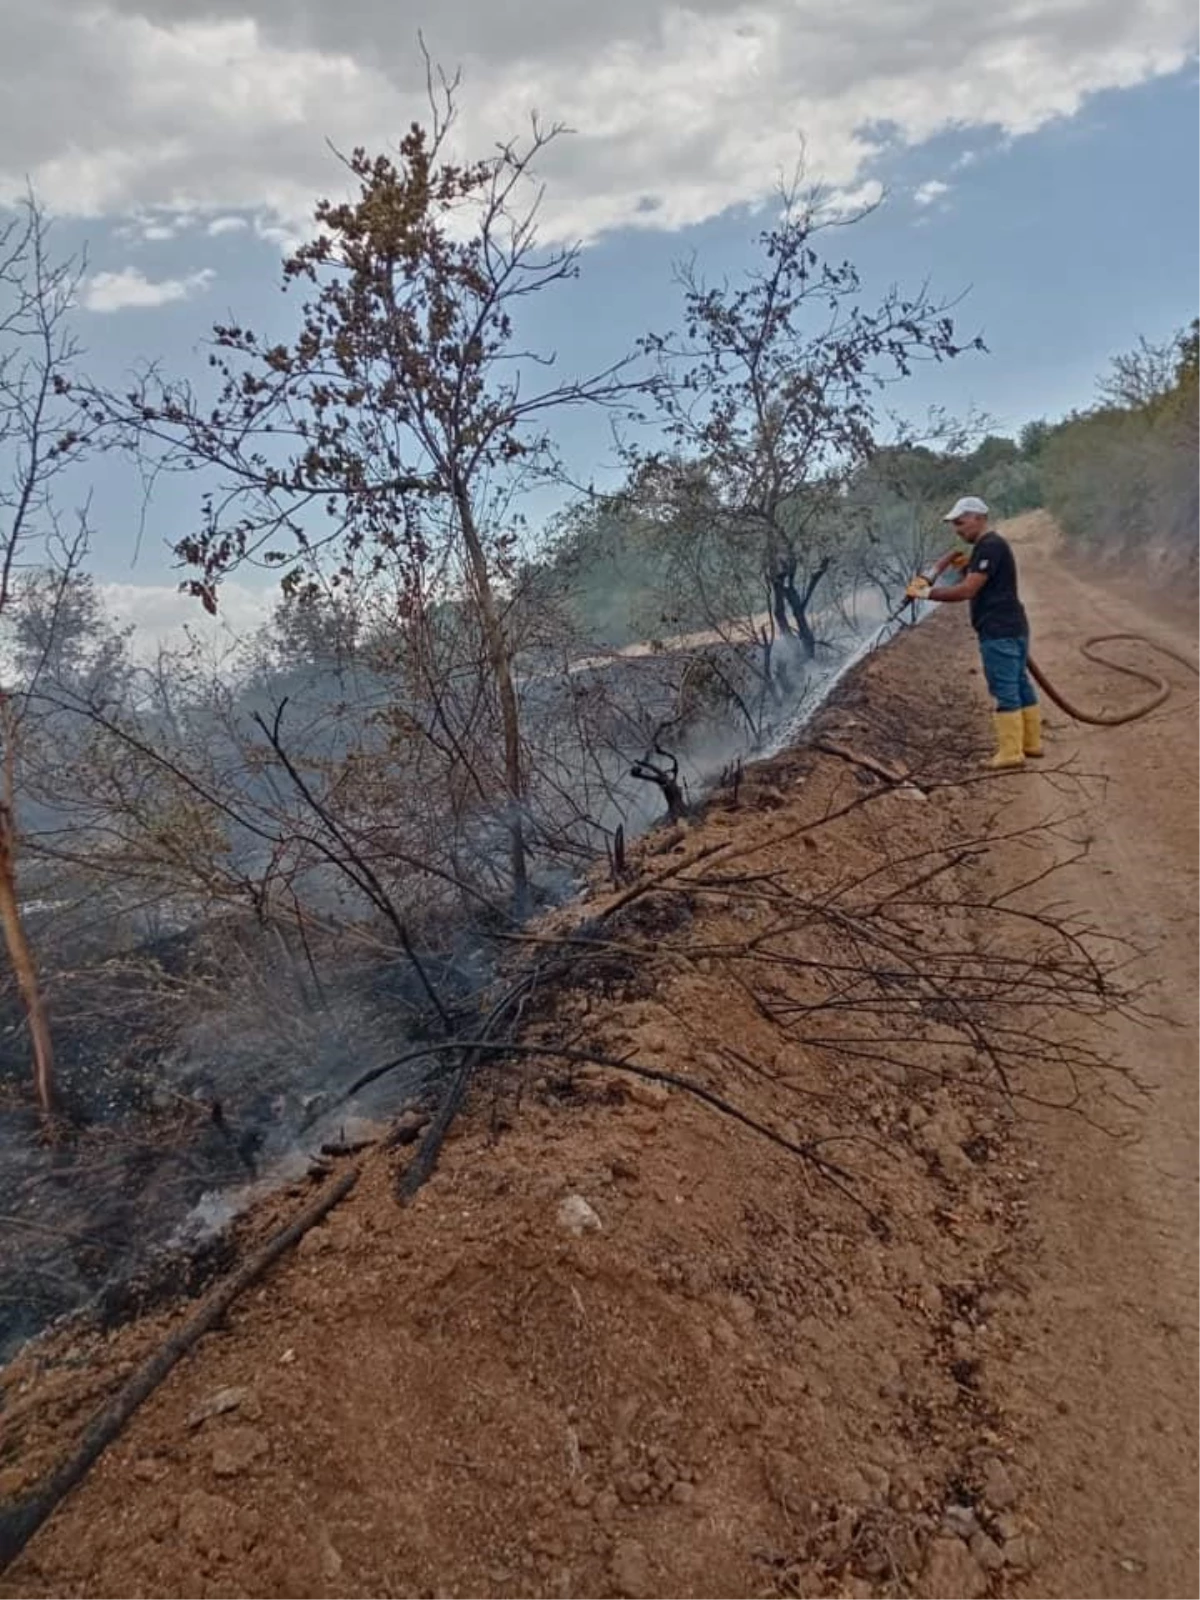 Baskil ilçesinde çıkan yangında kayısı ağaçları zarar gördü